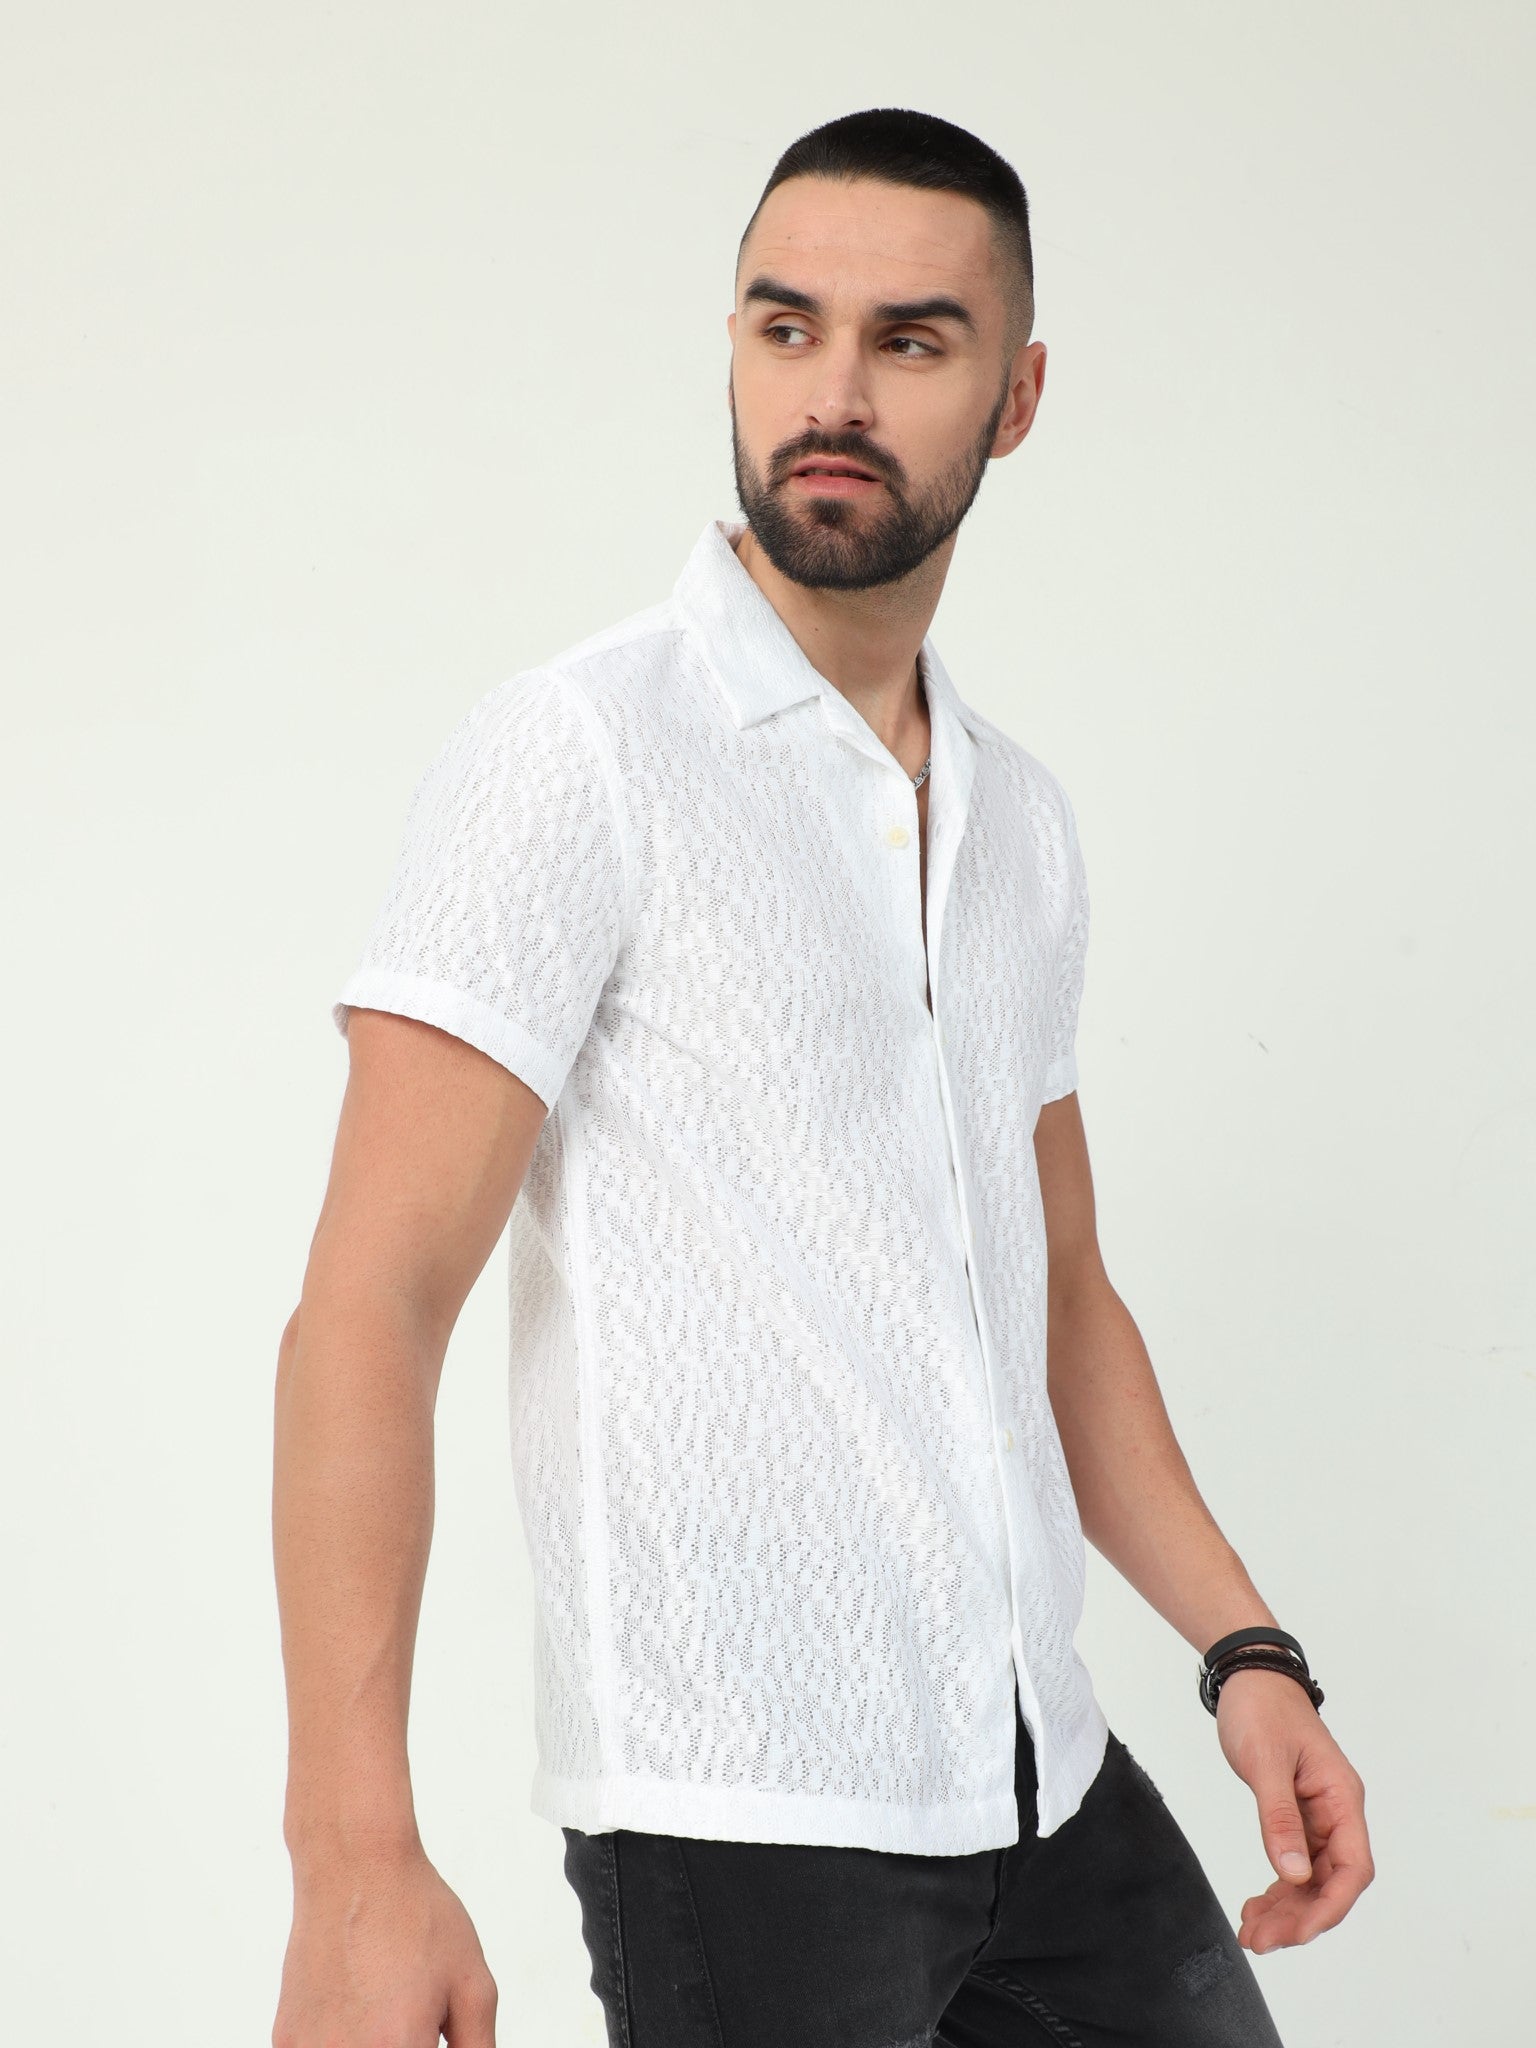 Lattice White Crochet Shirt for Men